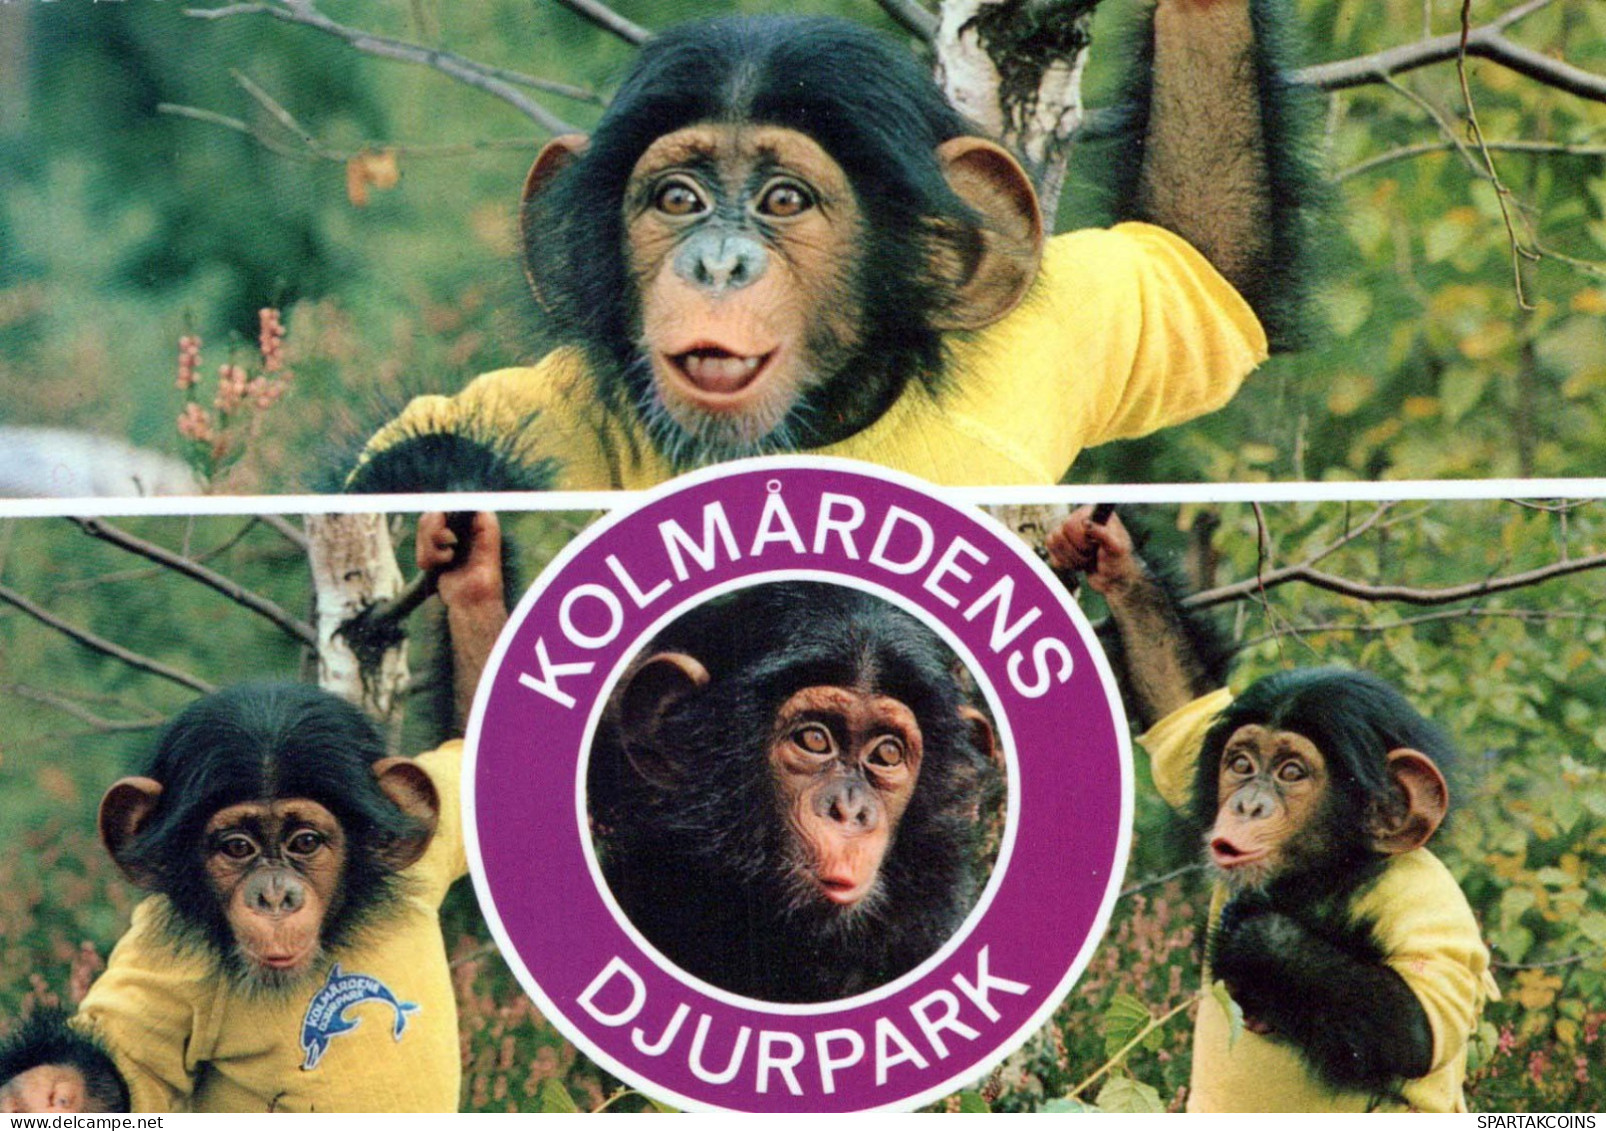 AFFE Tier Vintage Ansichtskarte Postkarte CPSM #PBS027.DE - Monkeys